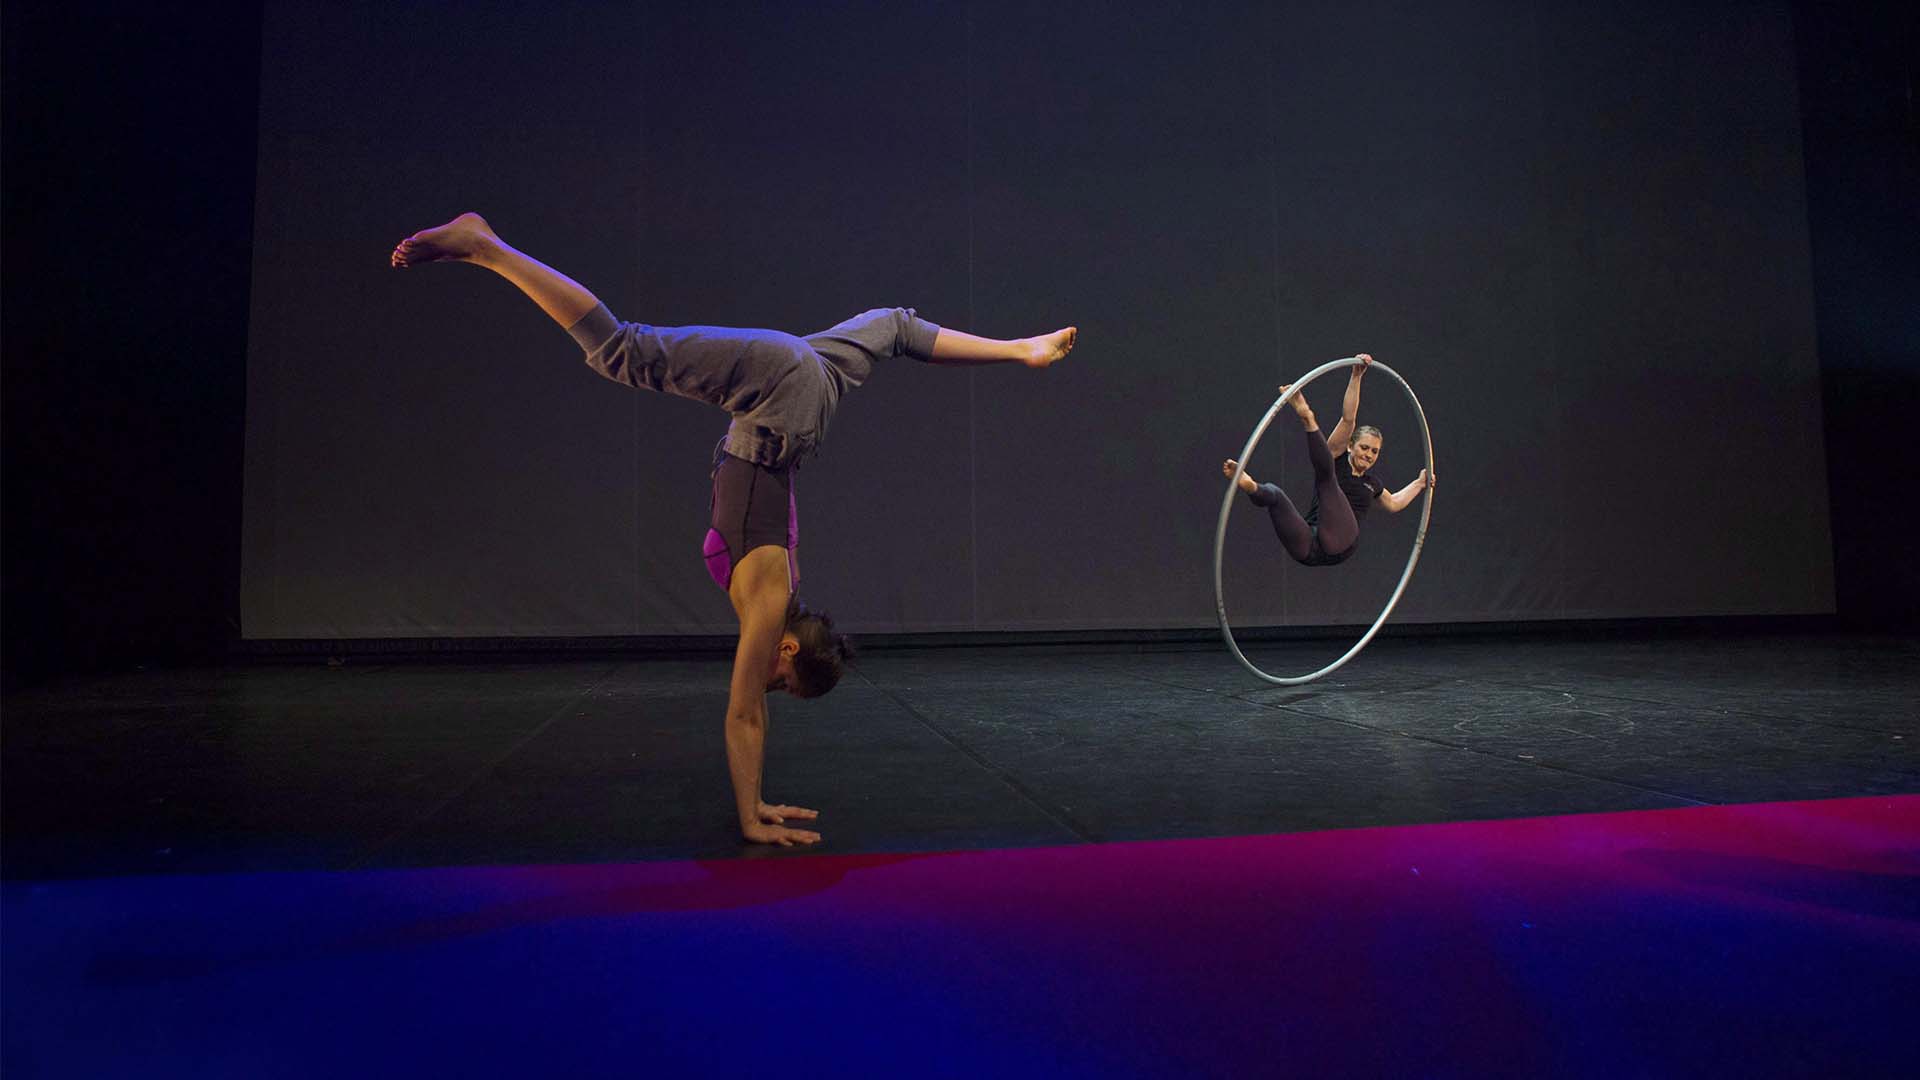 Les artistes s'échauffent avant la soirée d'ouverture du Cirque Eloize à Toronto pour Cirkopolis, le mercredi 1er mars 2017..